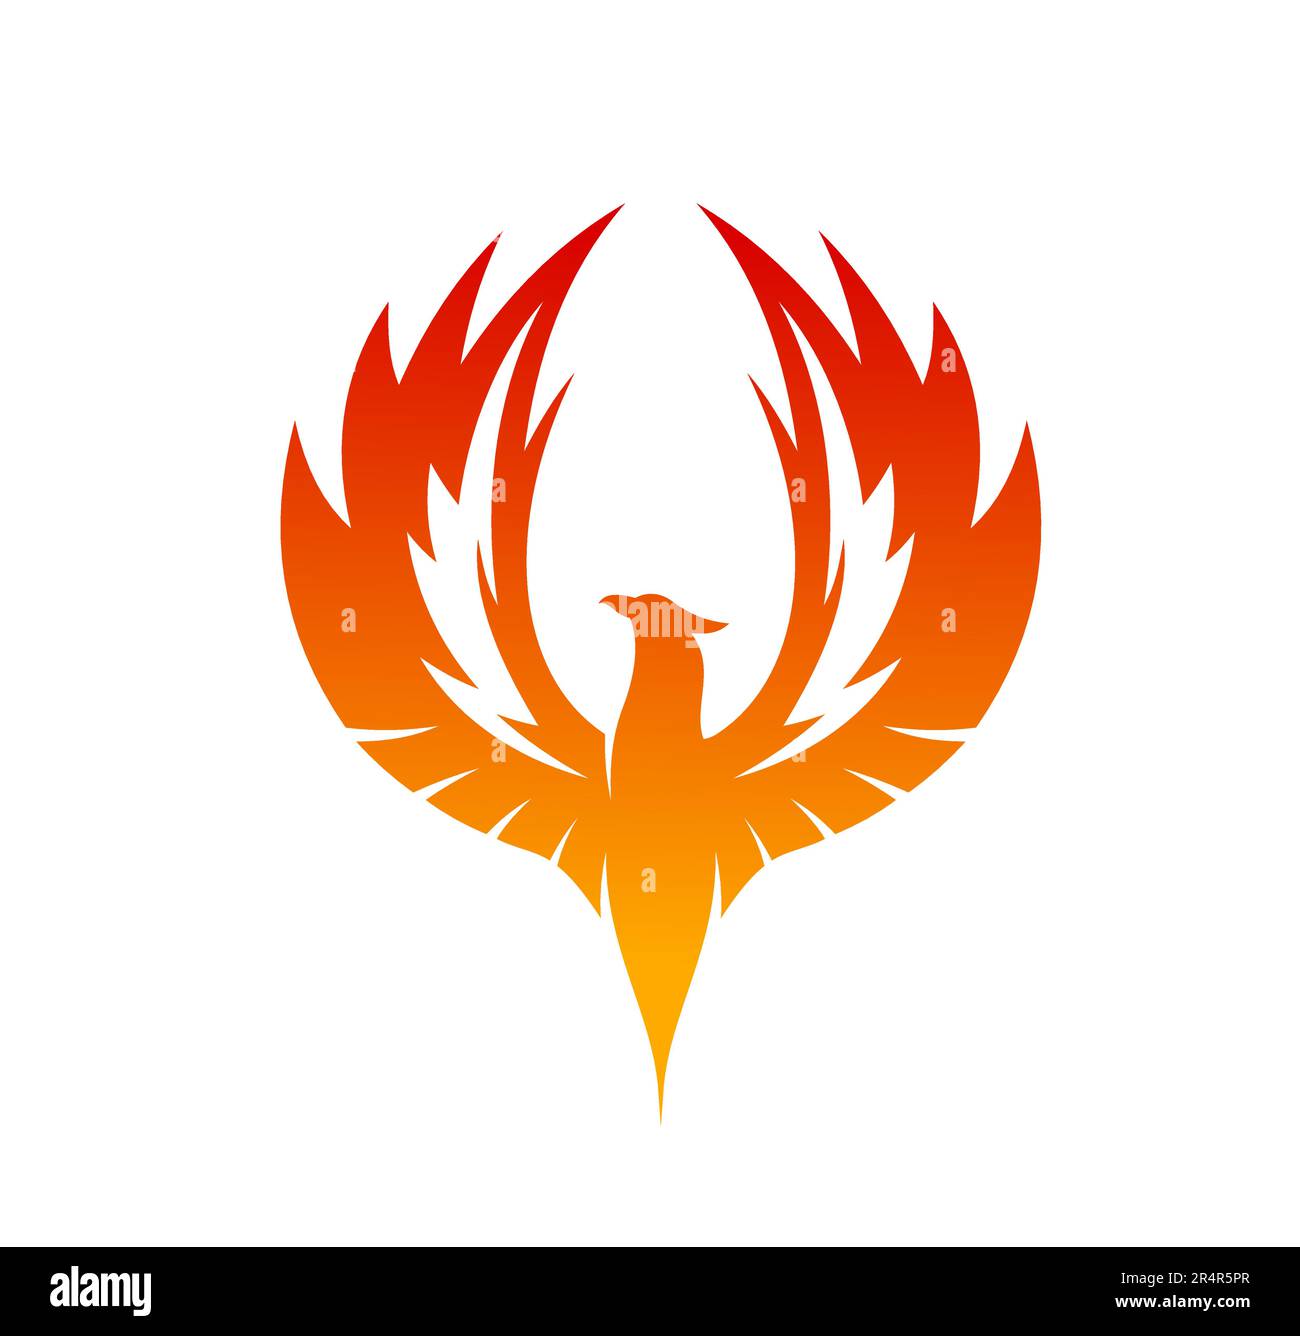 Ailes montantes d'oiseau de Phoenix avec flammes de feu et plumes brûlantes. Silhouette vectorielle de fenix volant ou phoenix. firebird flamboyant, aigle abstrait ou emblème héraldique falcon avec animal mythique fantaisie Illustration de Vecteur